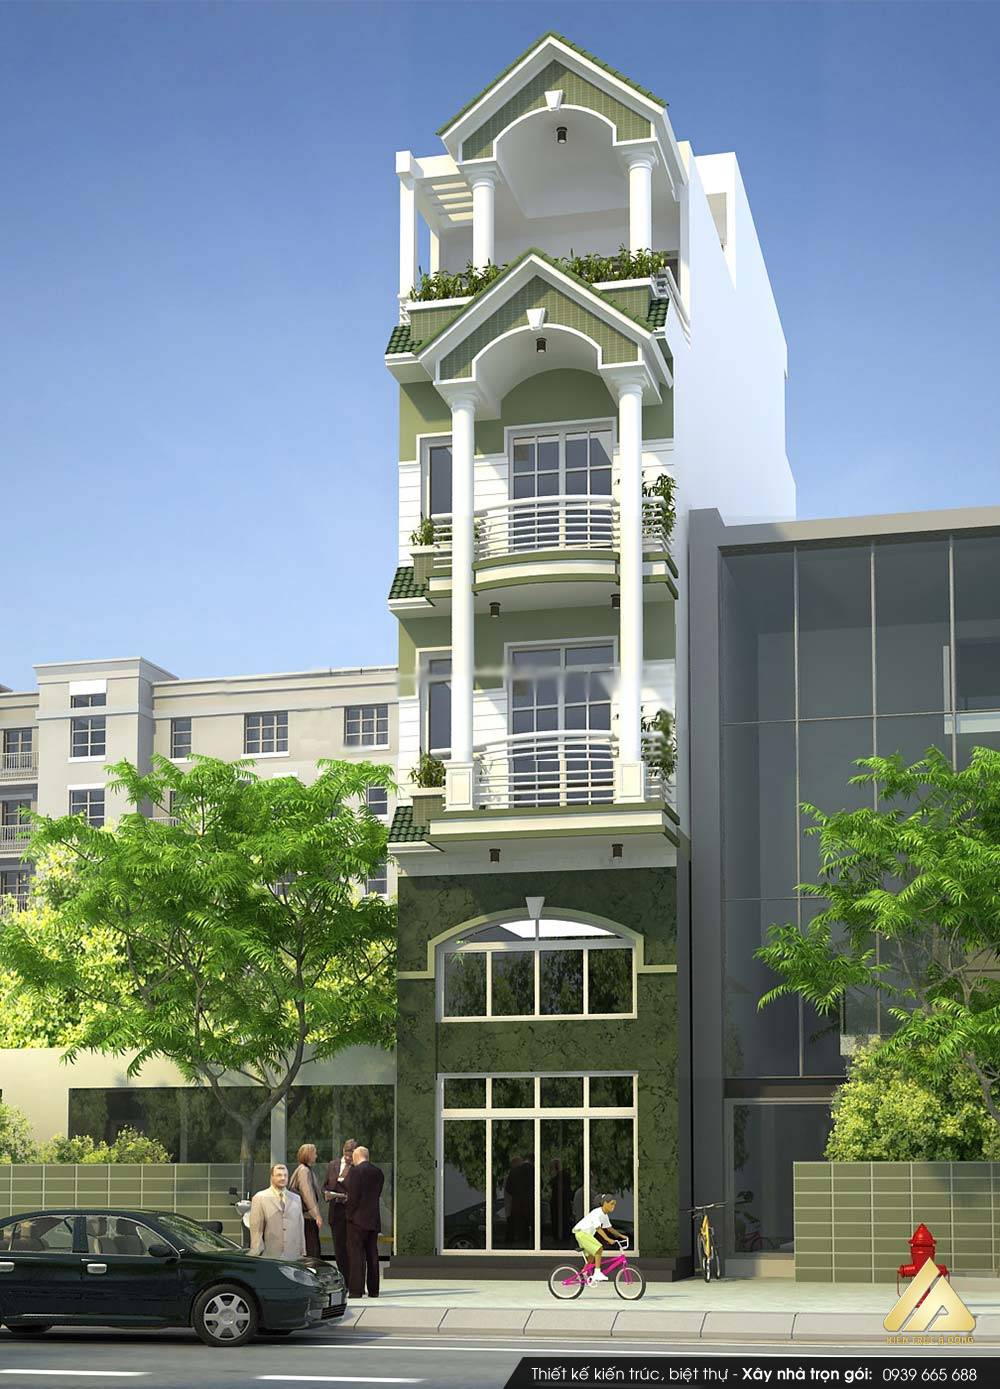 Cùng ngắm mẫu thiết kế nhà phố 5 tầng tuyệt đẹp > Thiết kế nhà phố 5 tầng đẹp đẳng cấp ở TP Hà Nội